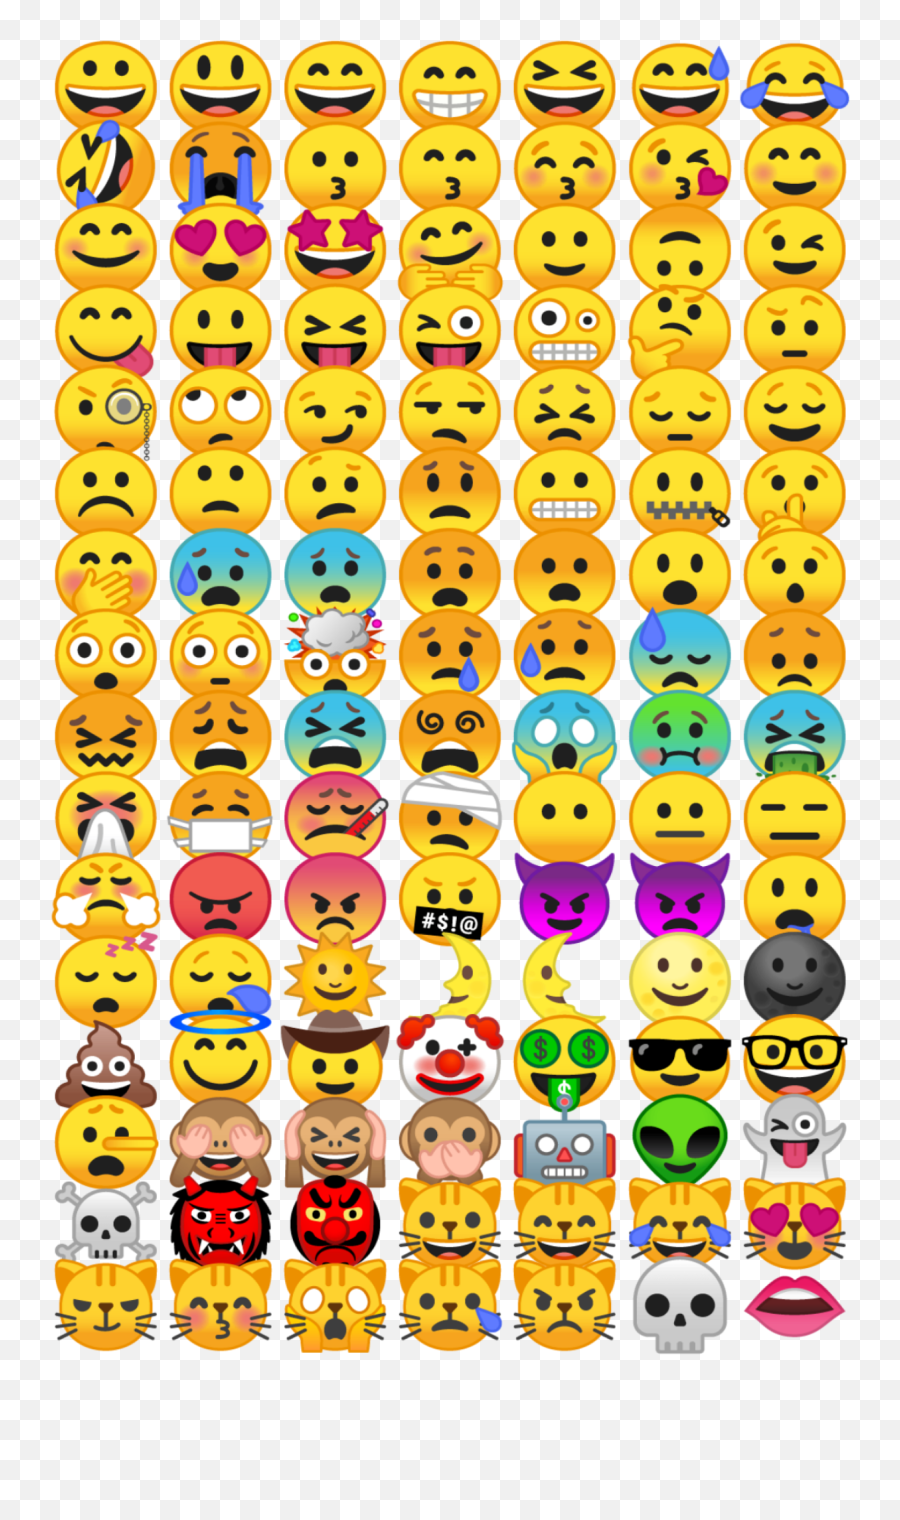 Crowd Crown Crowds Clouds Emoji - Smiley,Iphone And Android Emoji